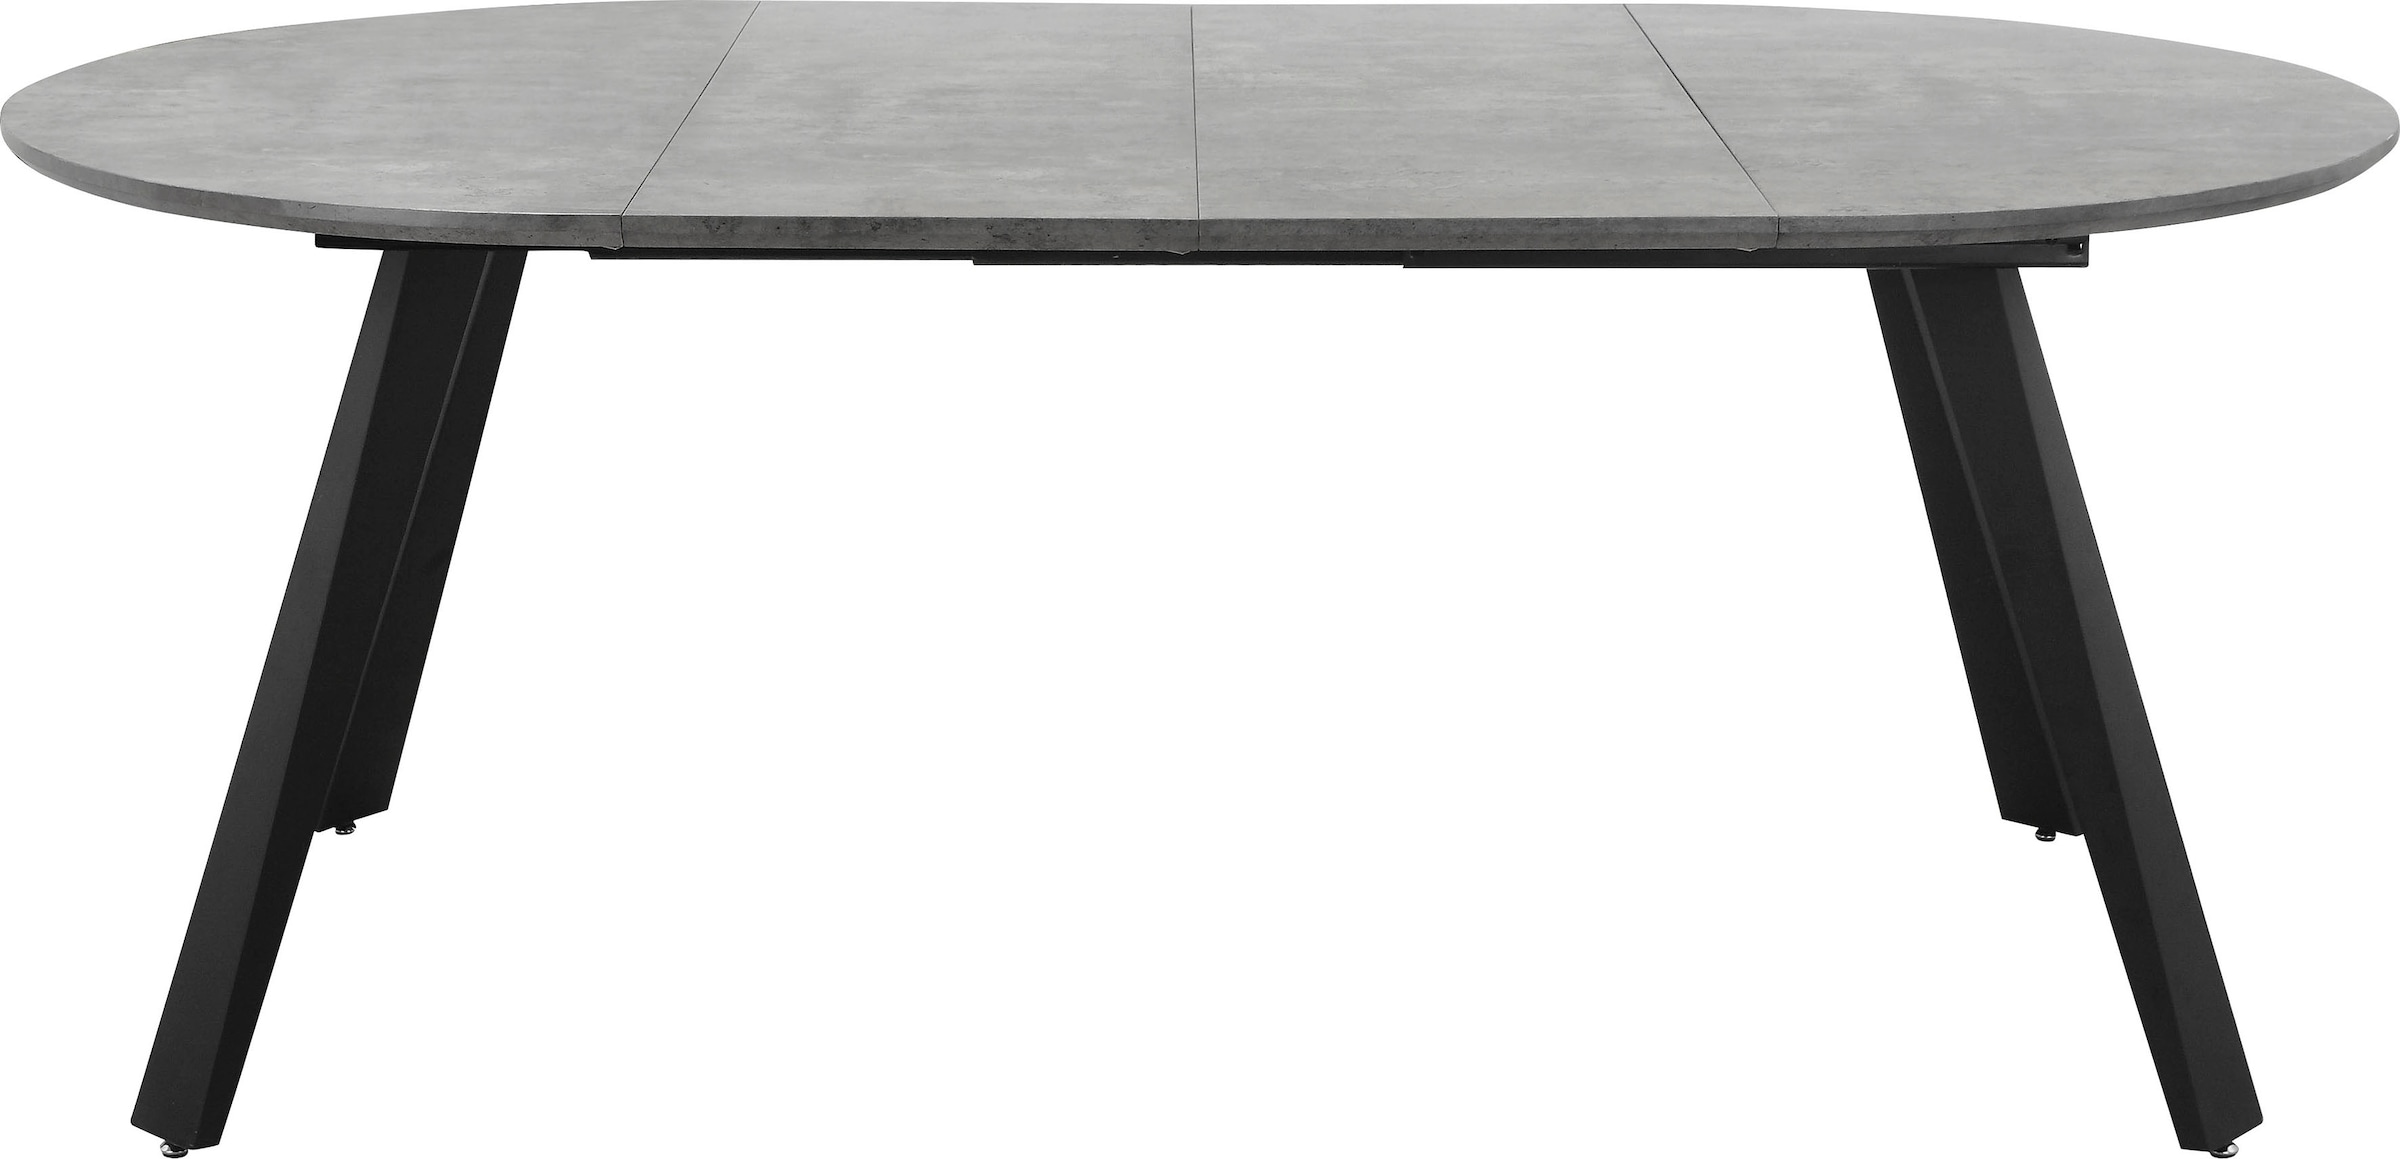 Home affaire Esstisch »Beaufay«, (1 St.), Tischplatte in Beton Optik, Gestell aus Metall schwarz, Höhe 75,5 cm